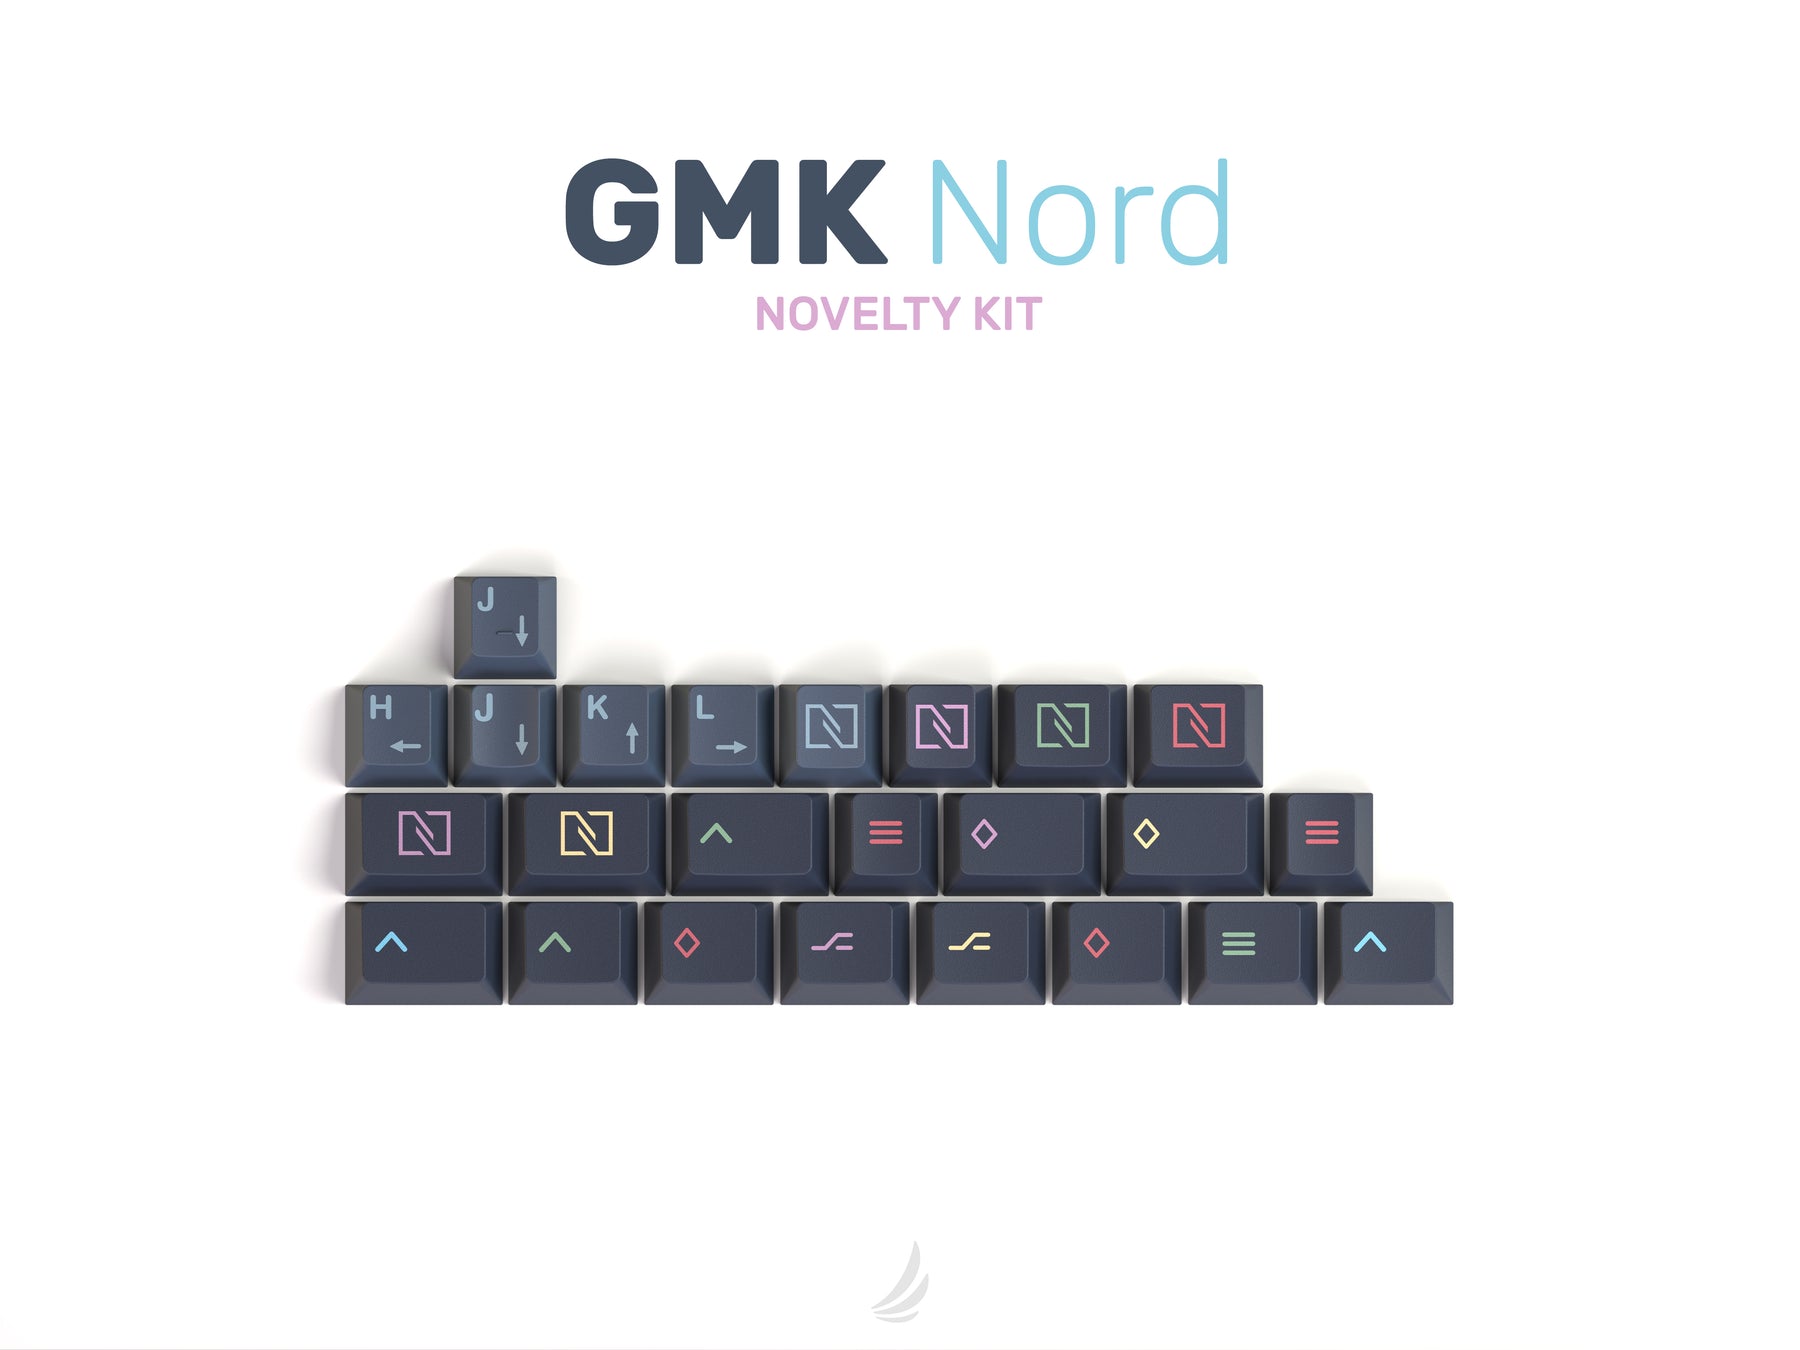 GMK Nord